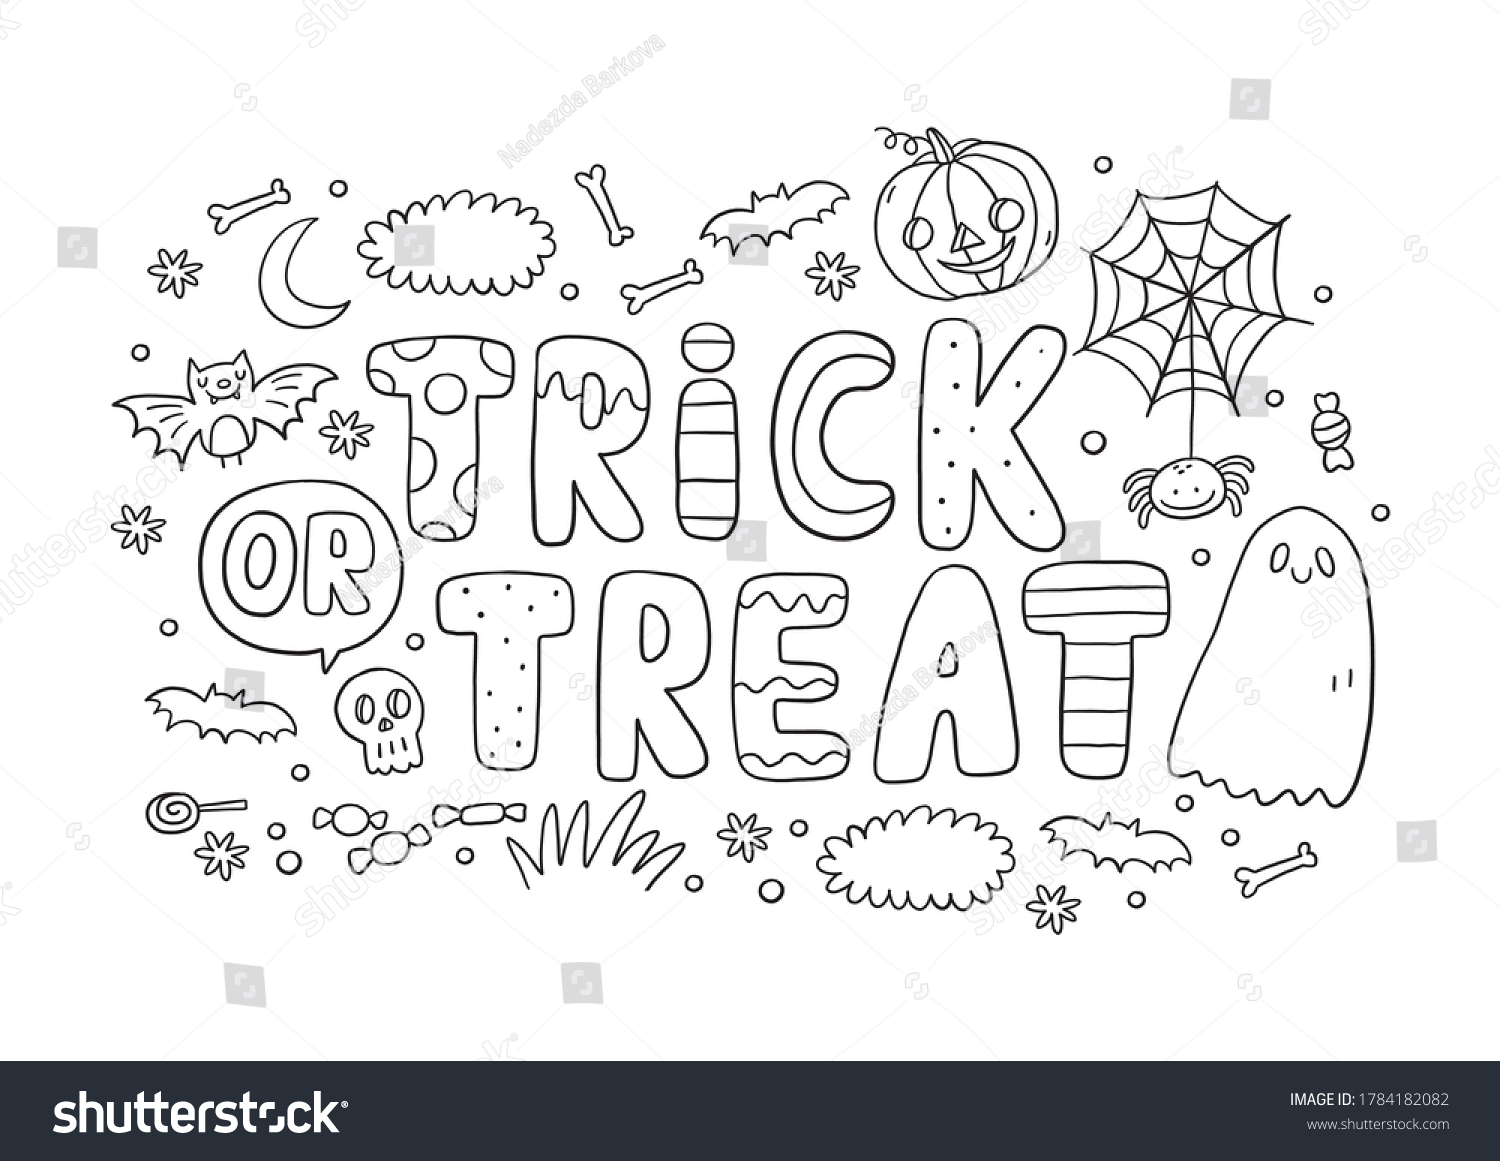 Trick treat coloring page halloween coloring åºåçéåïå ççï